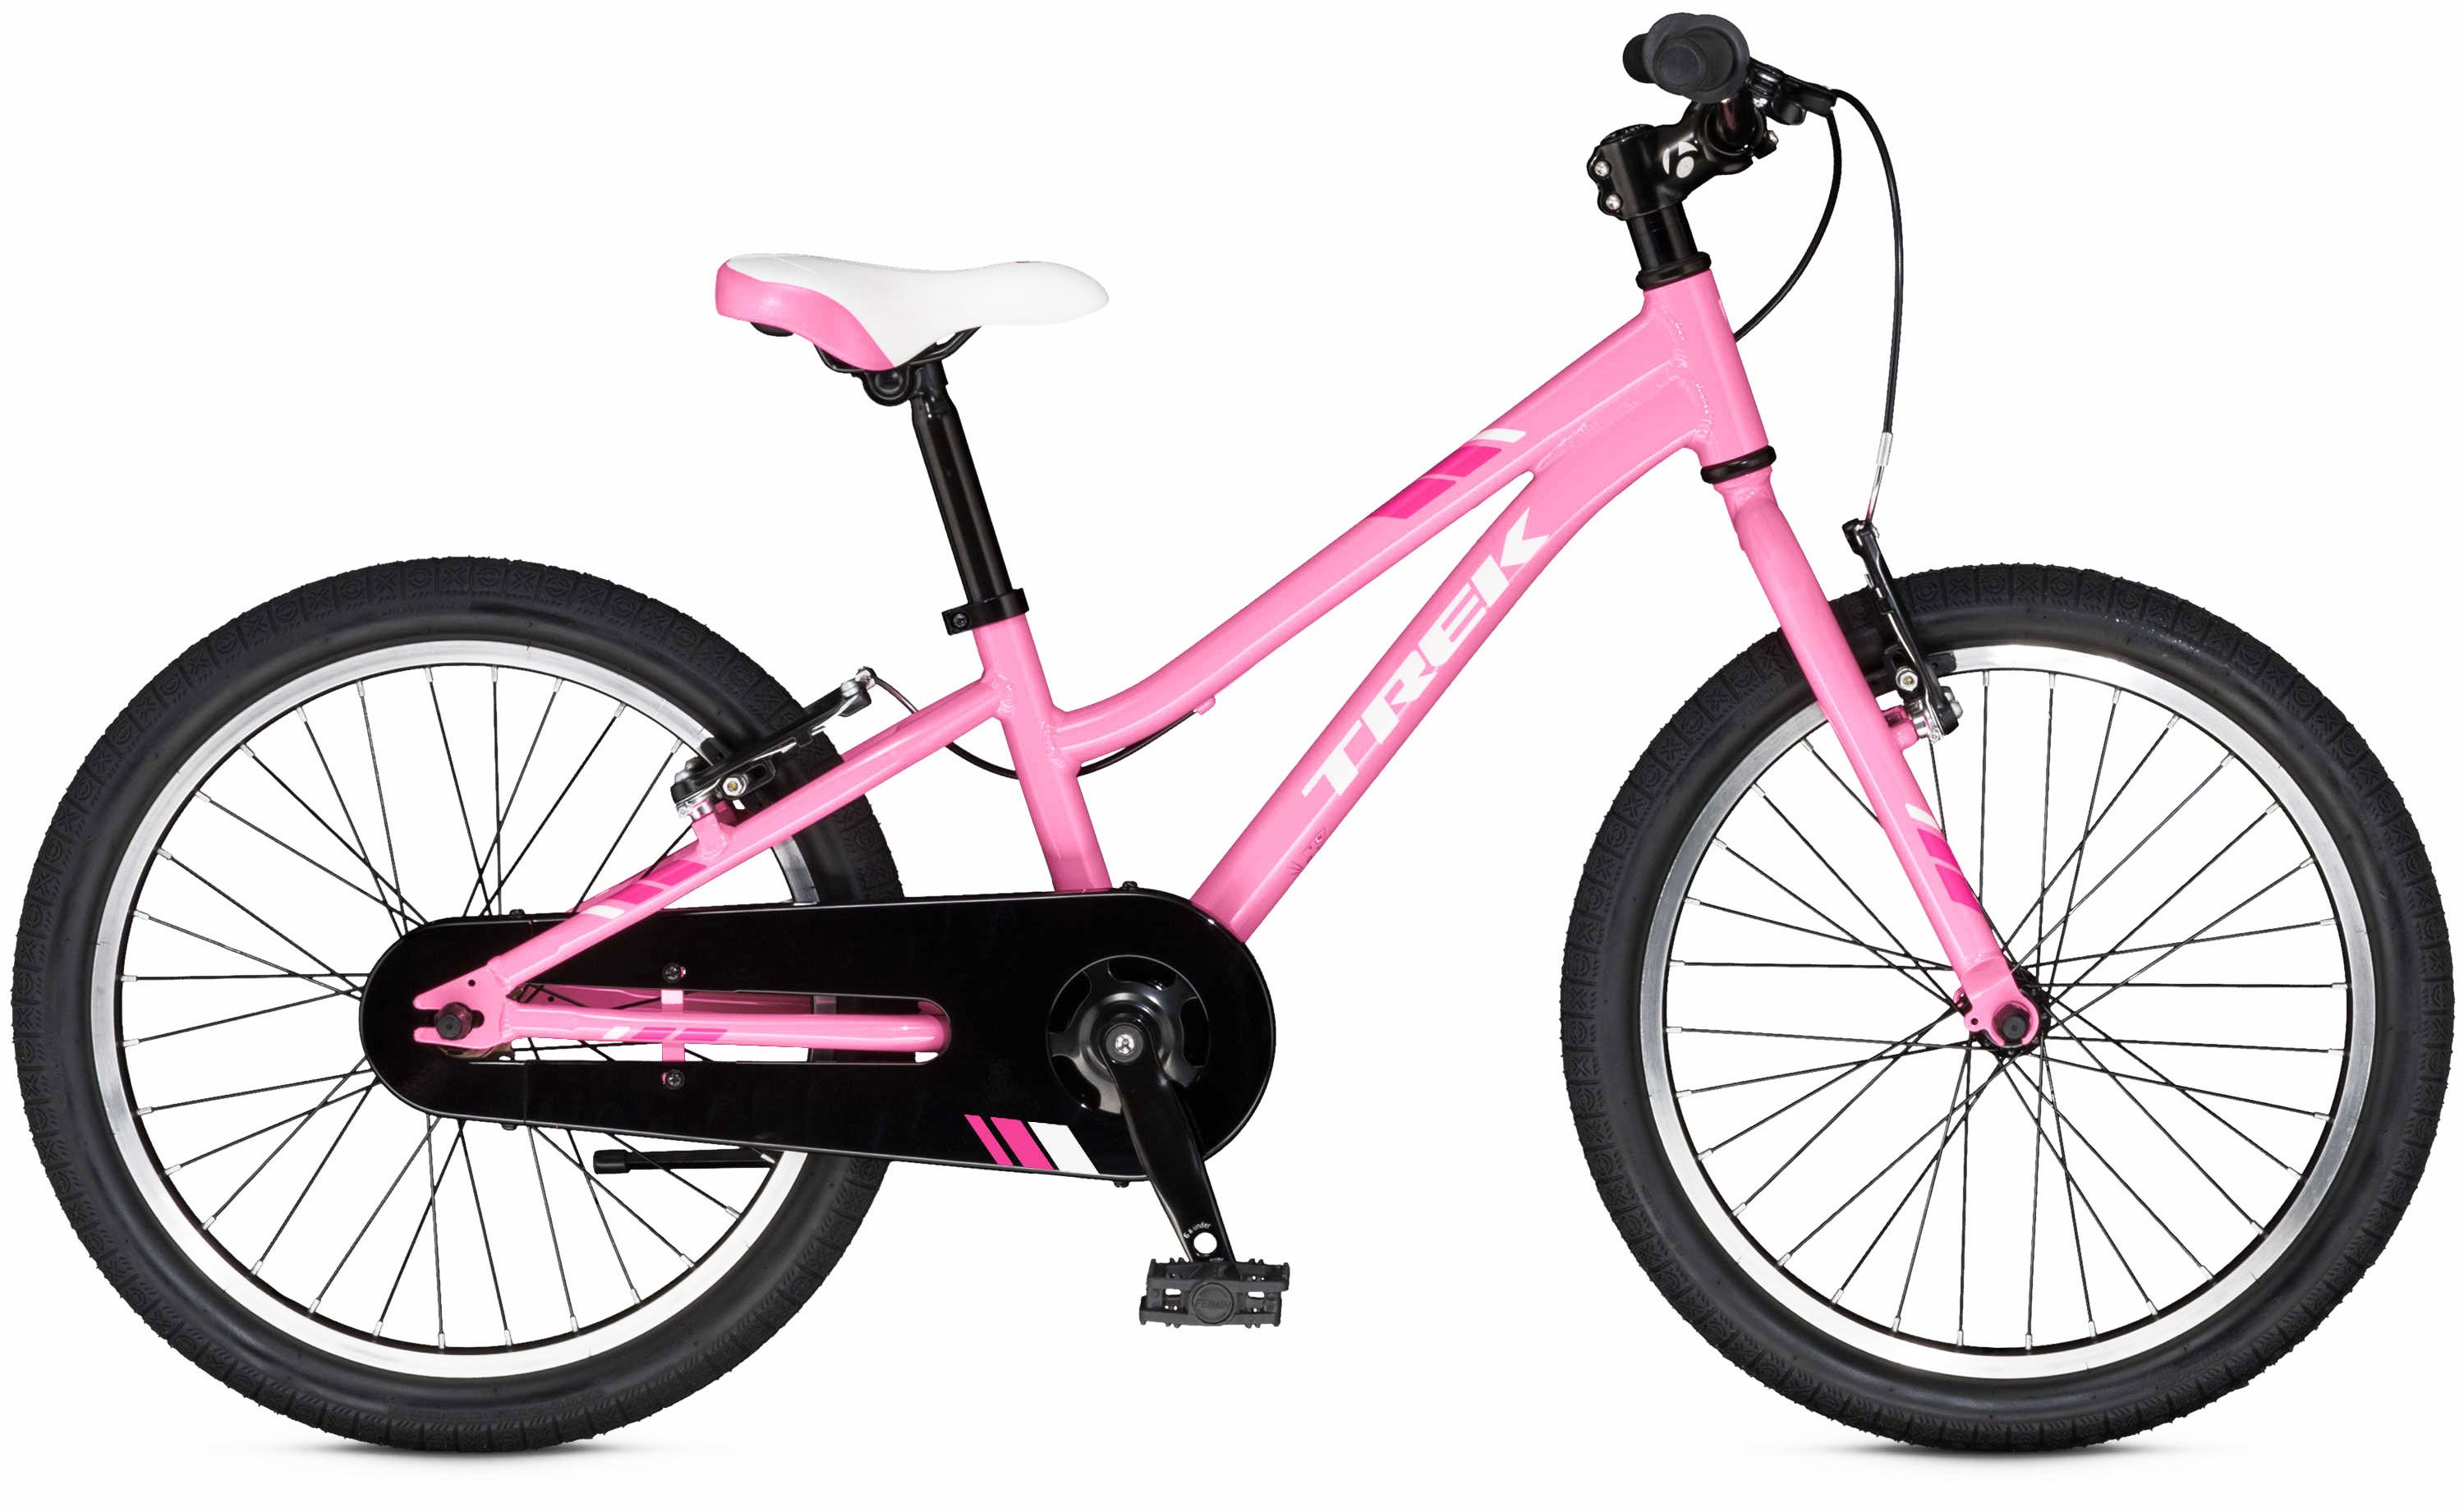  Отзывы о Детском велосипеде Trek PreCaliber 20 SS Girls 2016